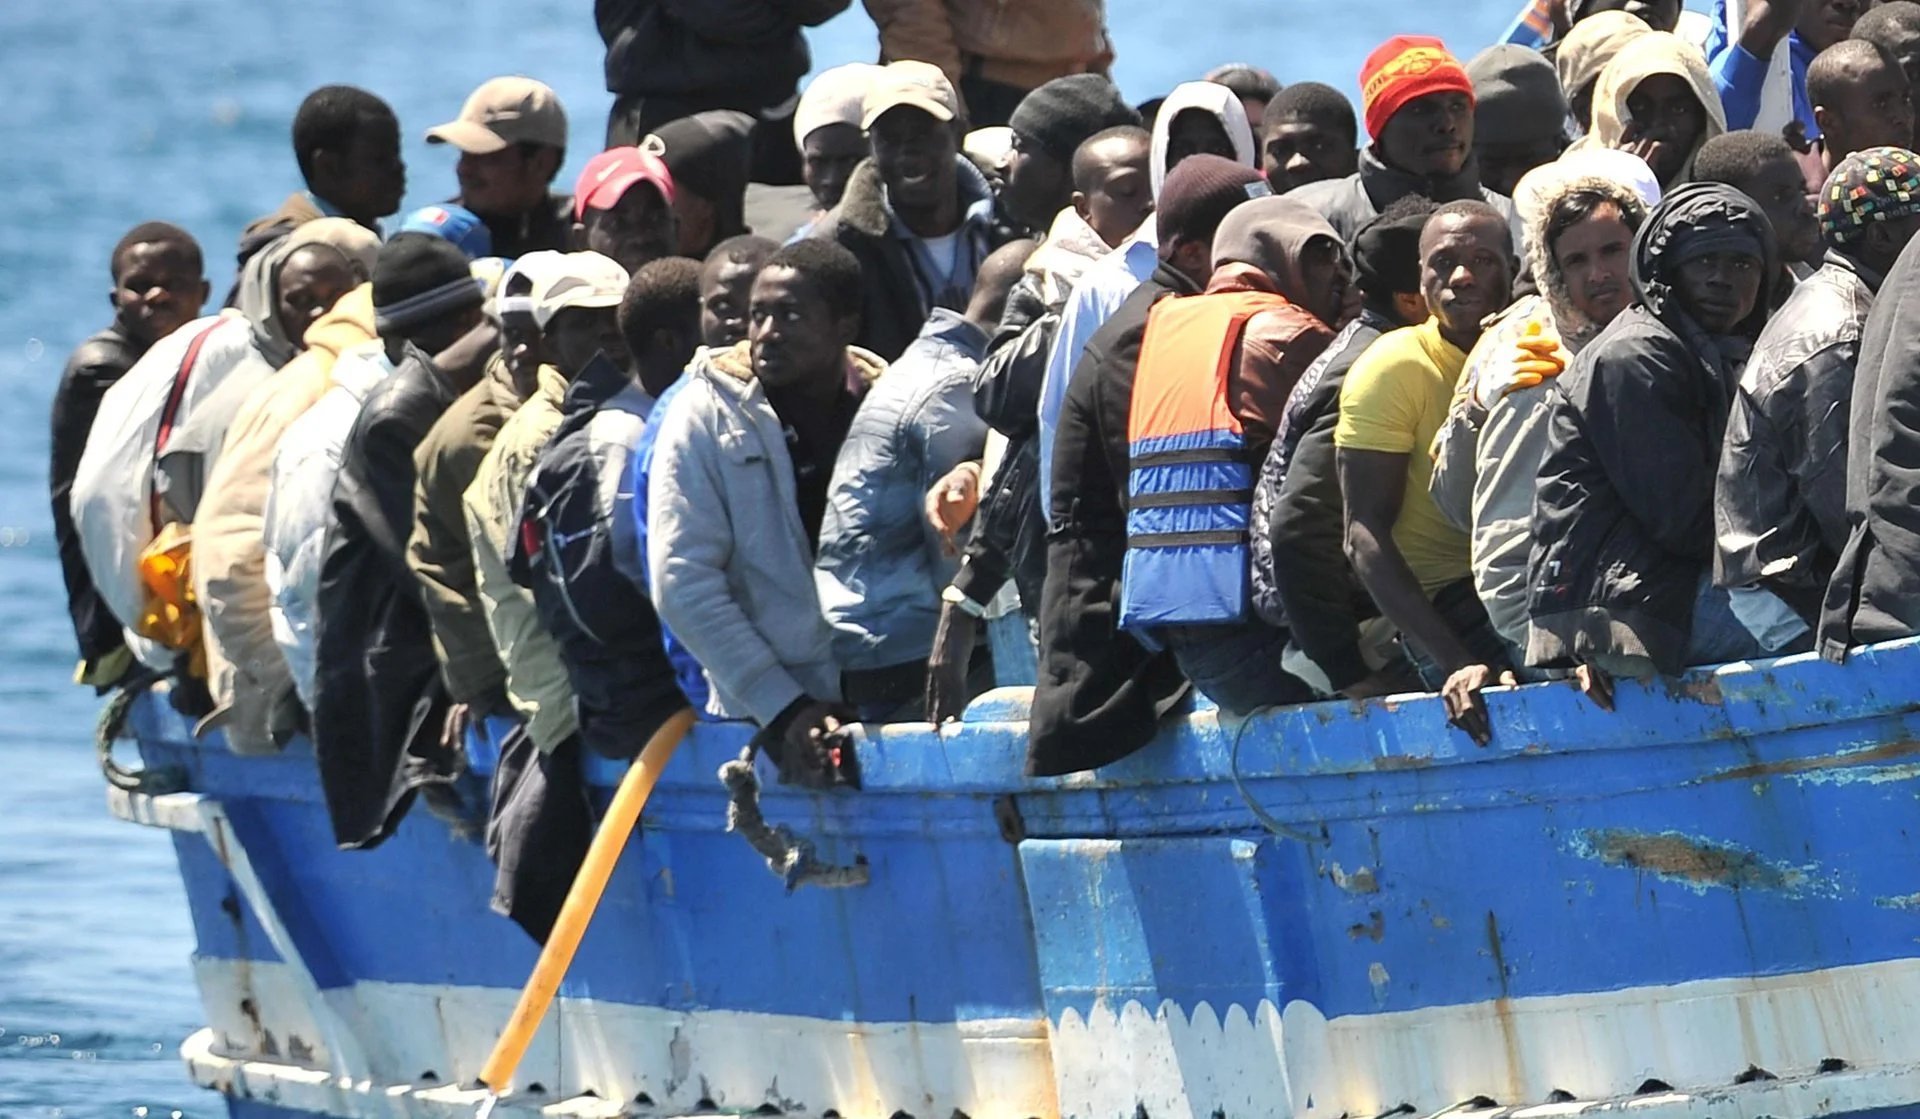 Immigrati che sbarcano sull'isola di lampedusa